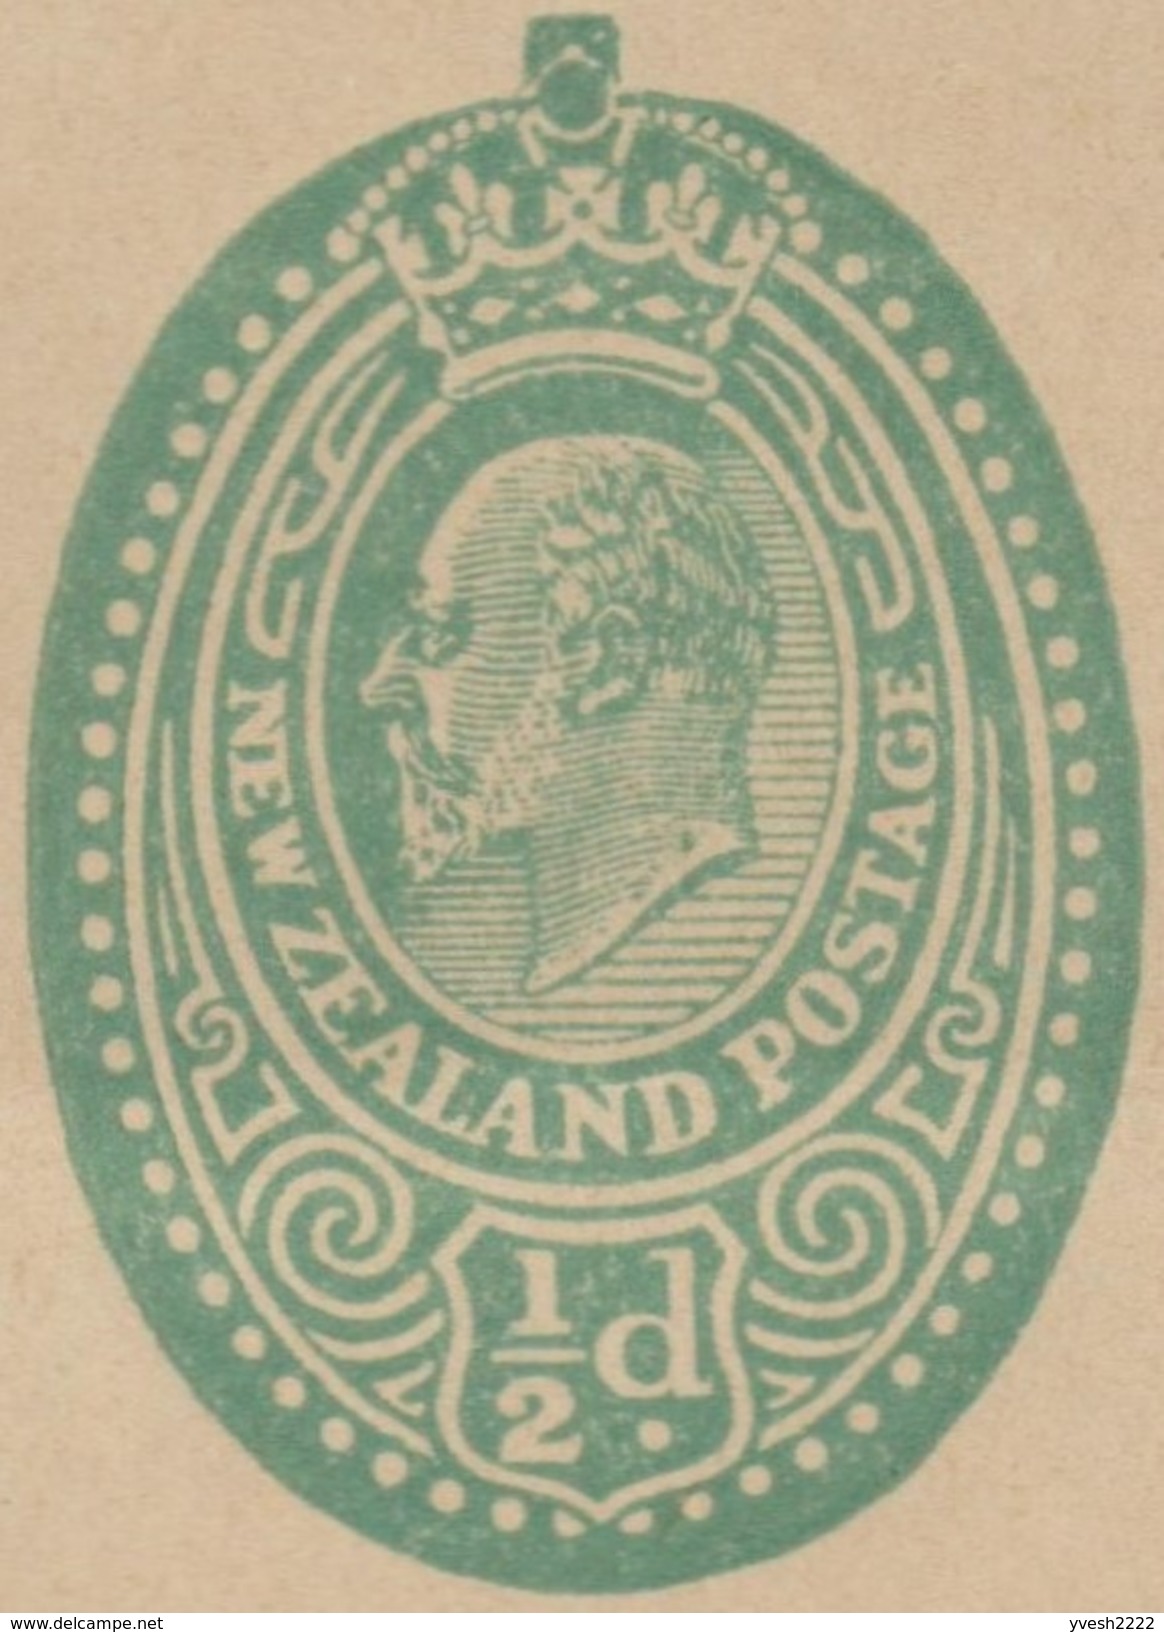 Nouvelle-Zélande Vers 1908. Entier Postal, Bande-journal Édouard VII » (Edward VII). Fraîcheur Exceptionnelle - Enteros Postales